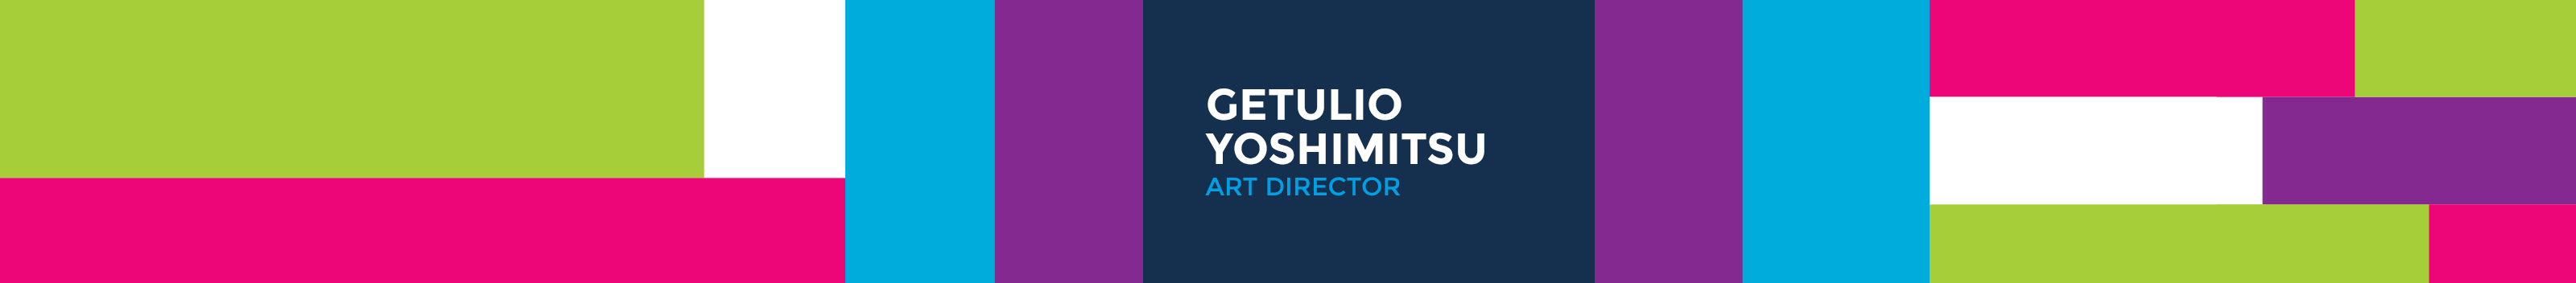 Banner de perfil de Getulio Yoshimitsu